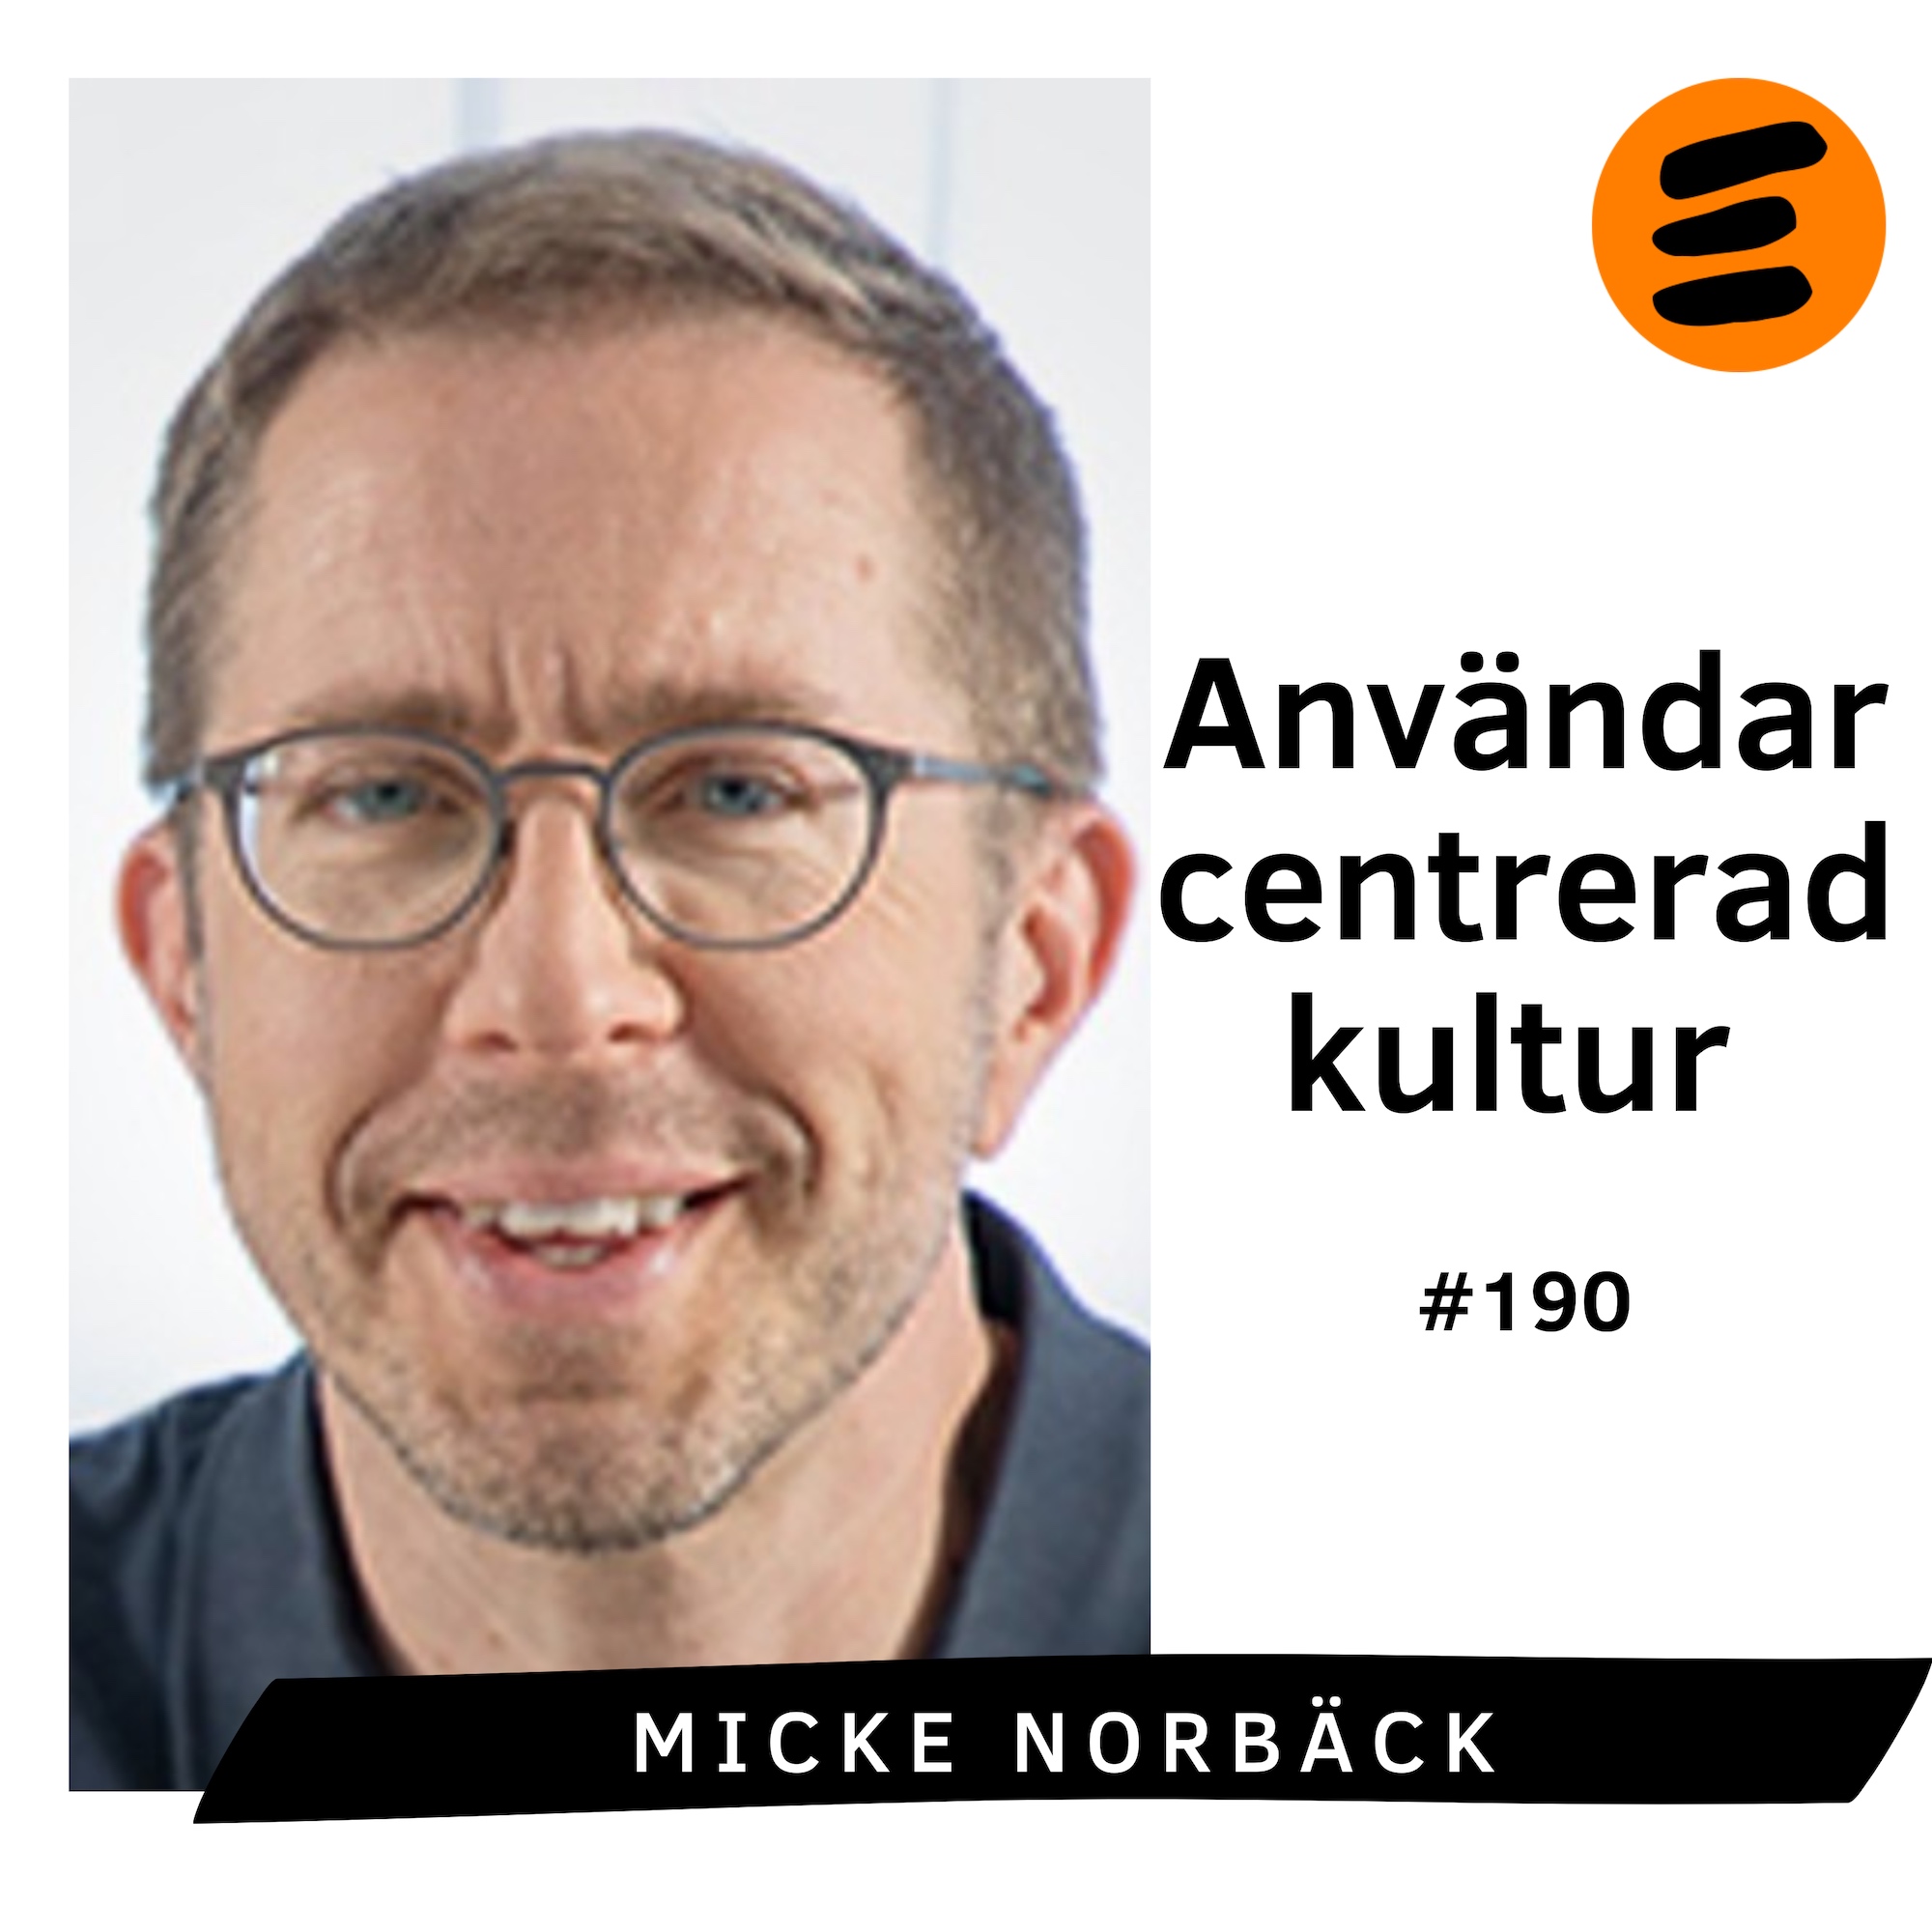 Användarcentrerad kultur. Micke Norbäck (# 190)